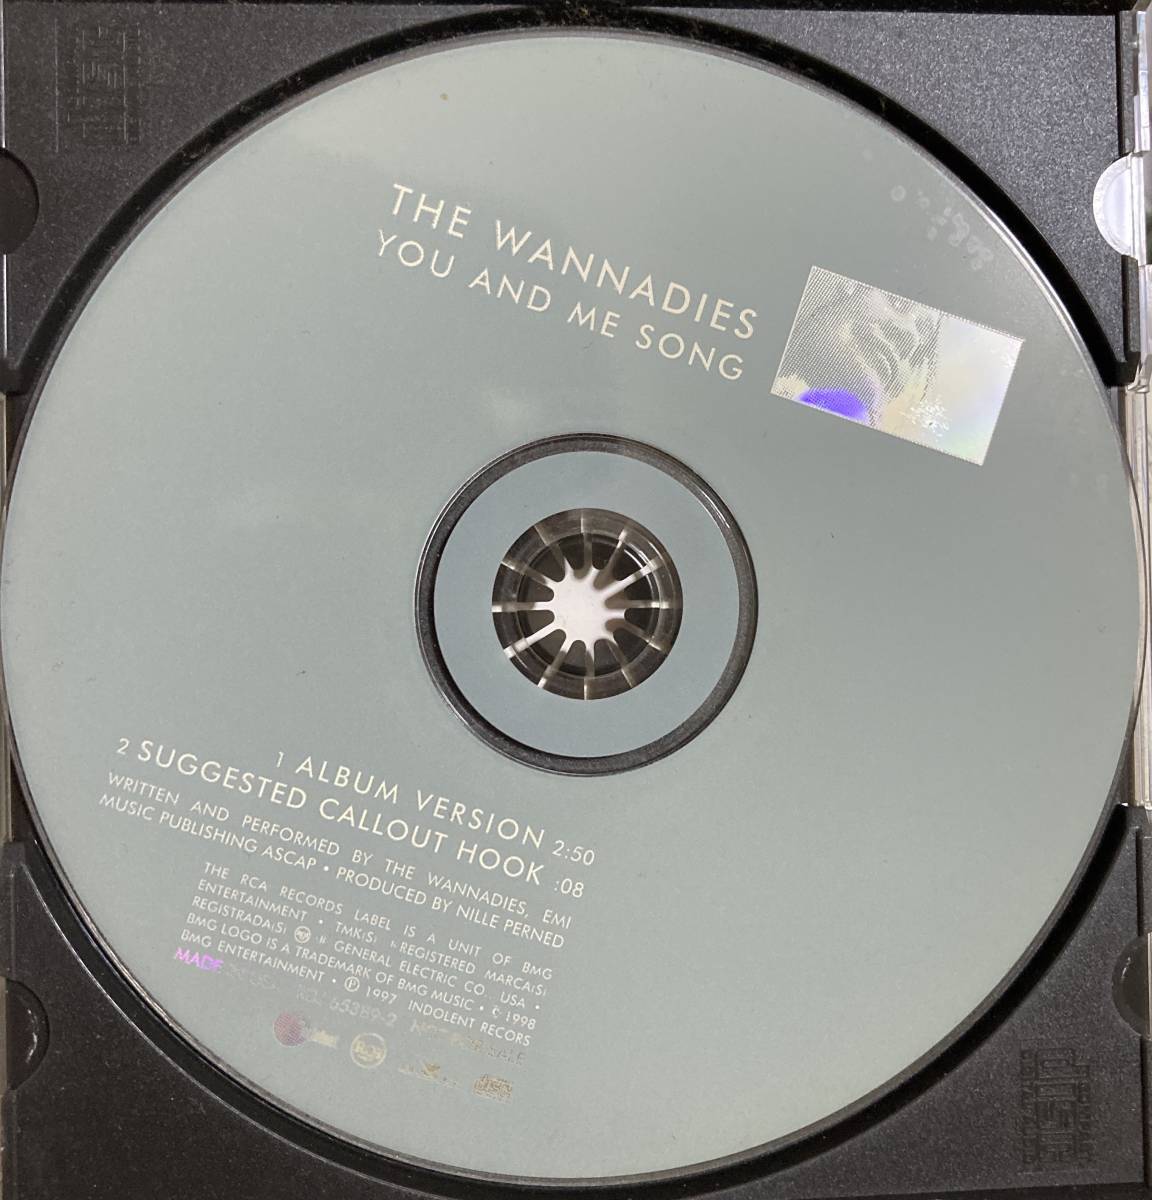 超貴重輸入盤2曲収録CD!!THE WANNADIES ザ・ワナダイズ『YOU AND ME SONG / SUGGESTED CALLOUT HOOK』スウェディッシュポップ めちゃレア♪_画像3